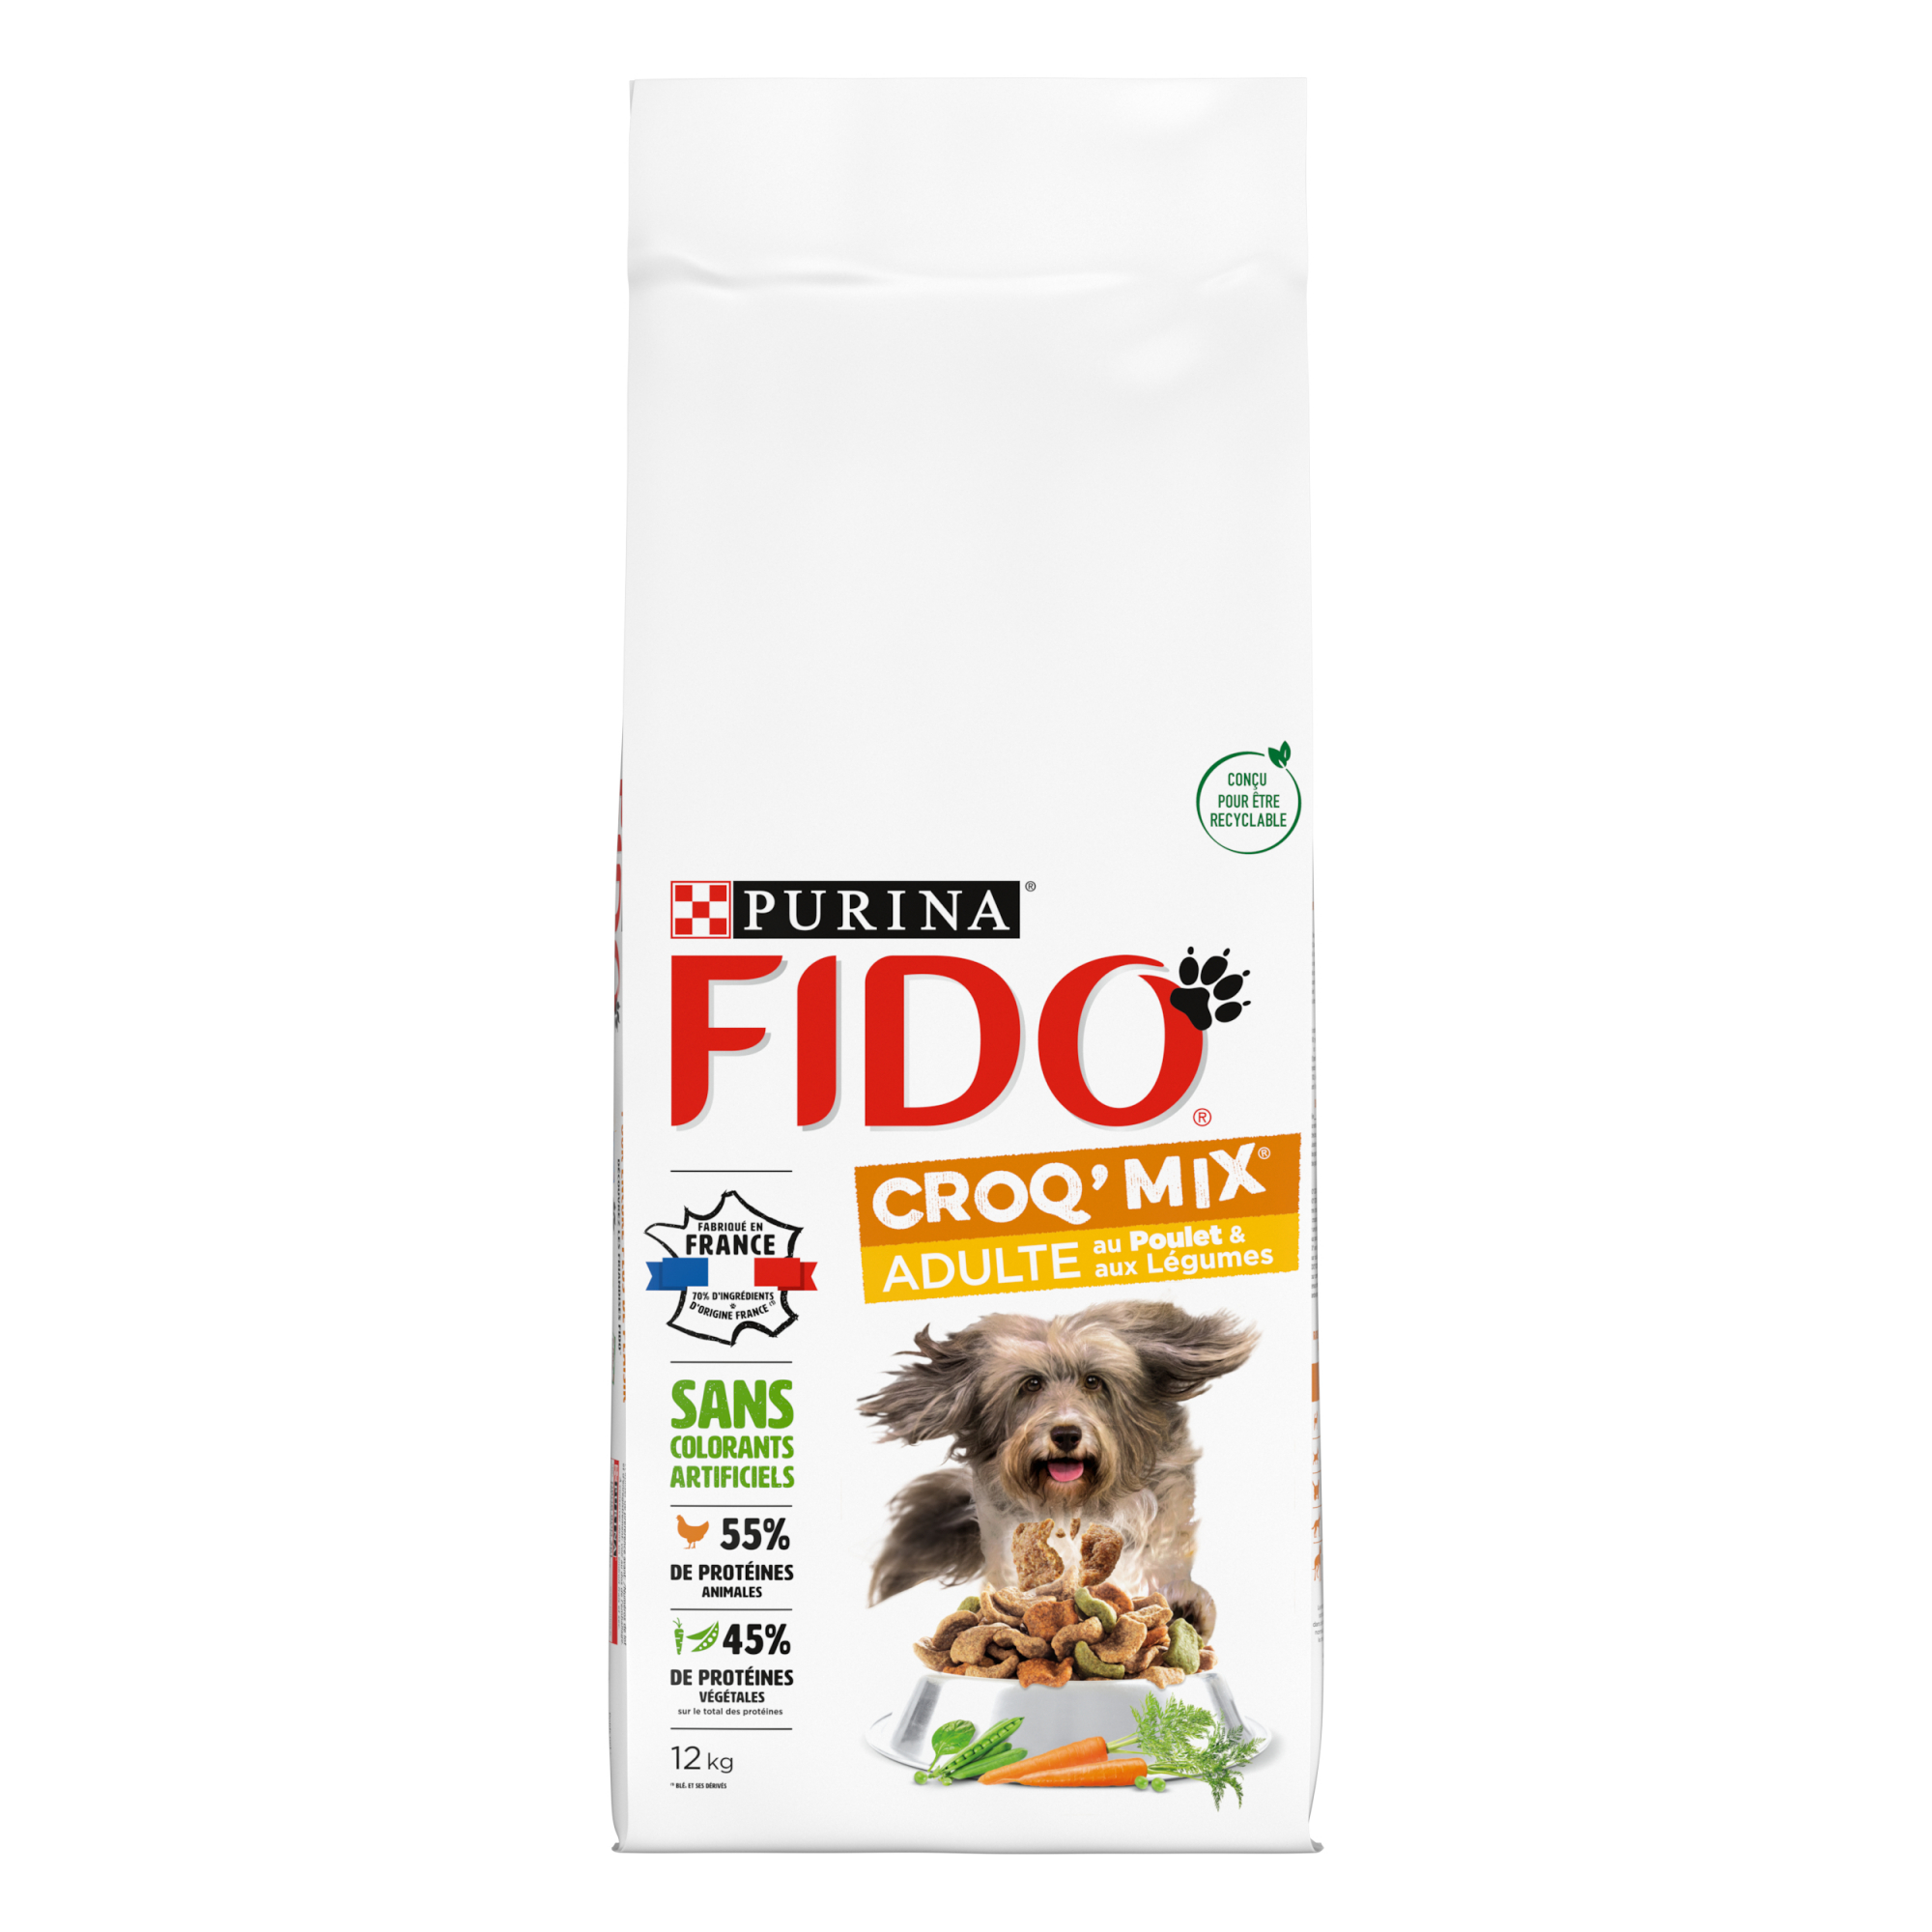 FIDO Croq Mix con ternera o pollo para perros adultos